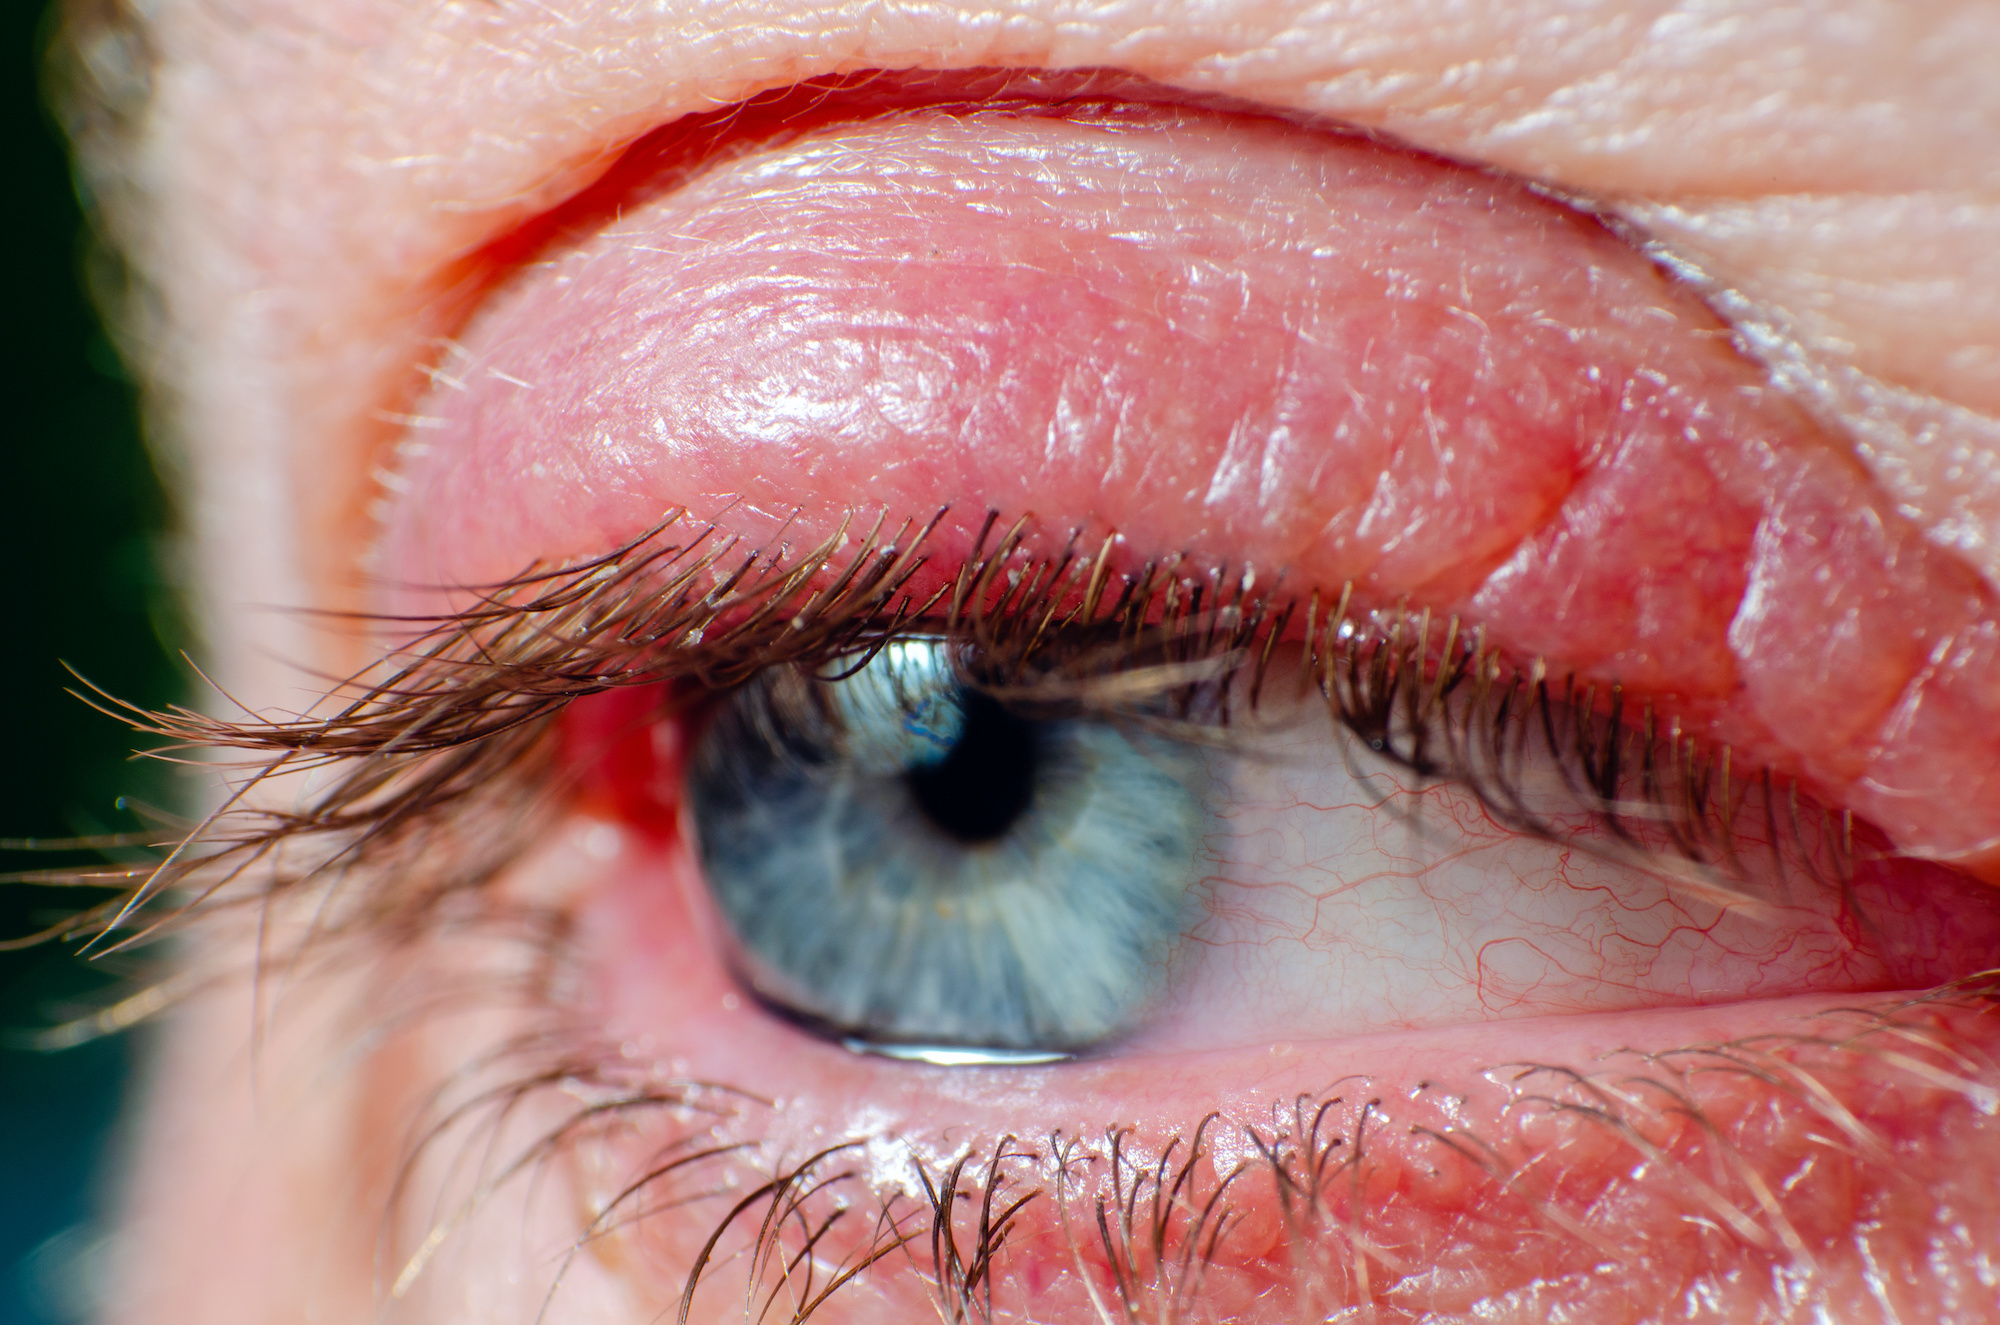 La blépharite est une inflammation de la paupière. © andrei310, Adobe Stock